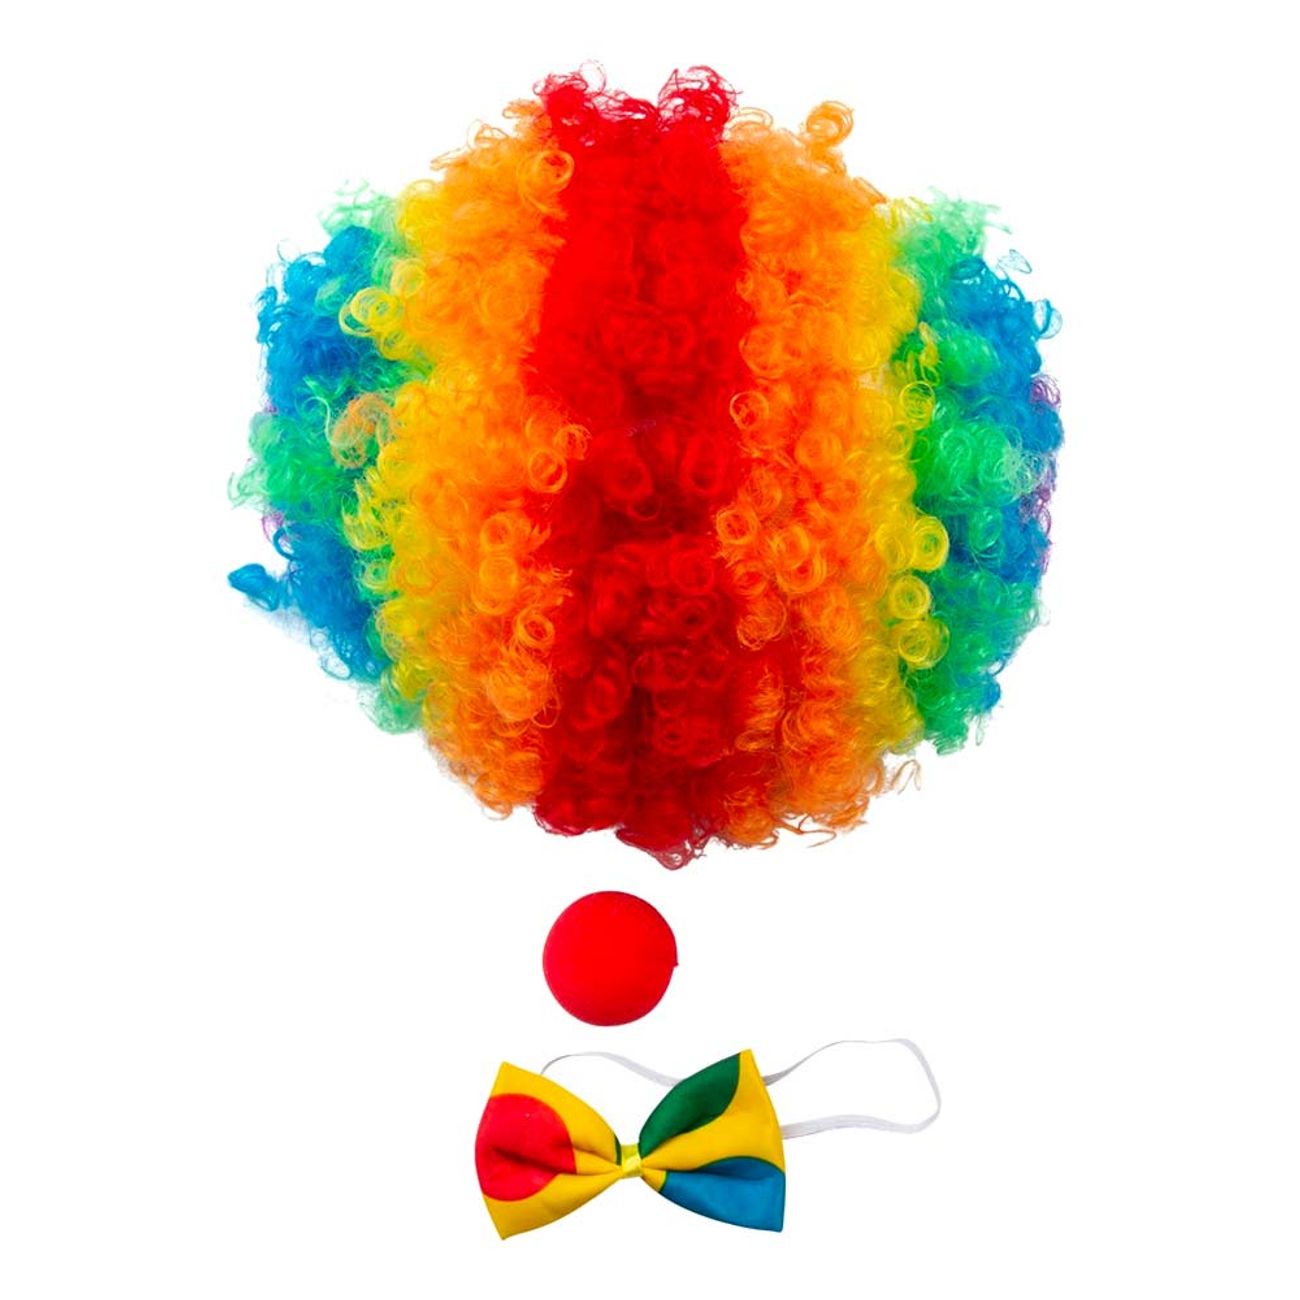 clown-tillbehorsset-96543-2